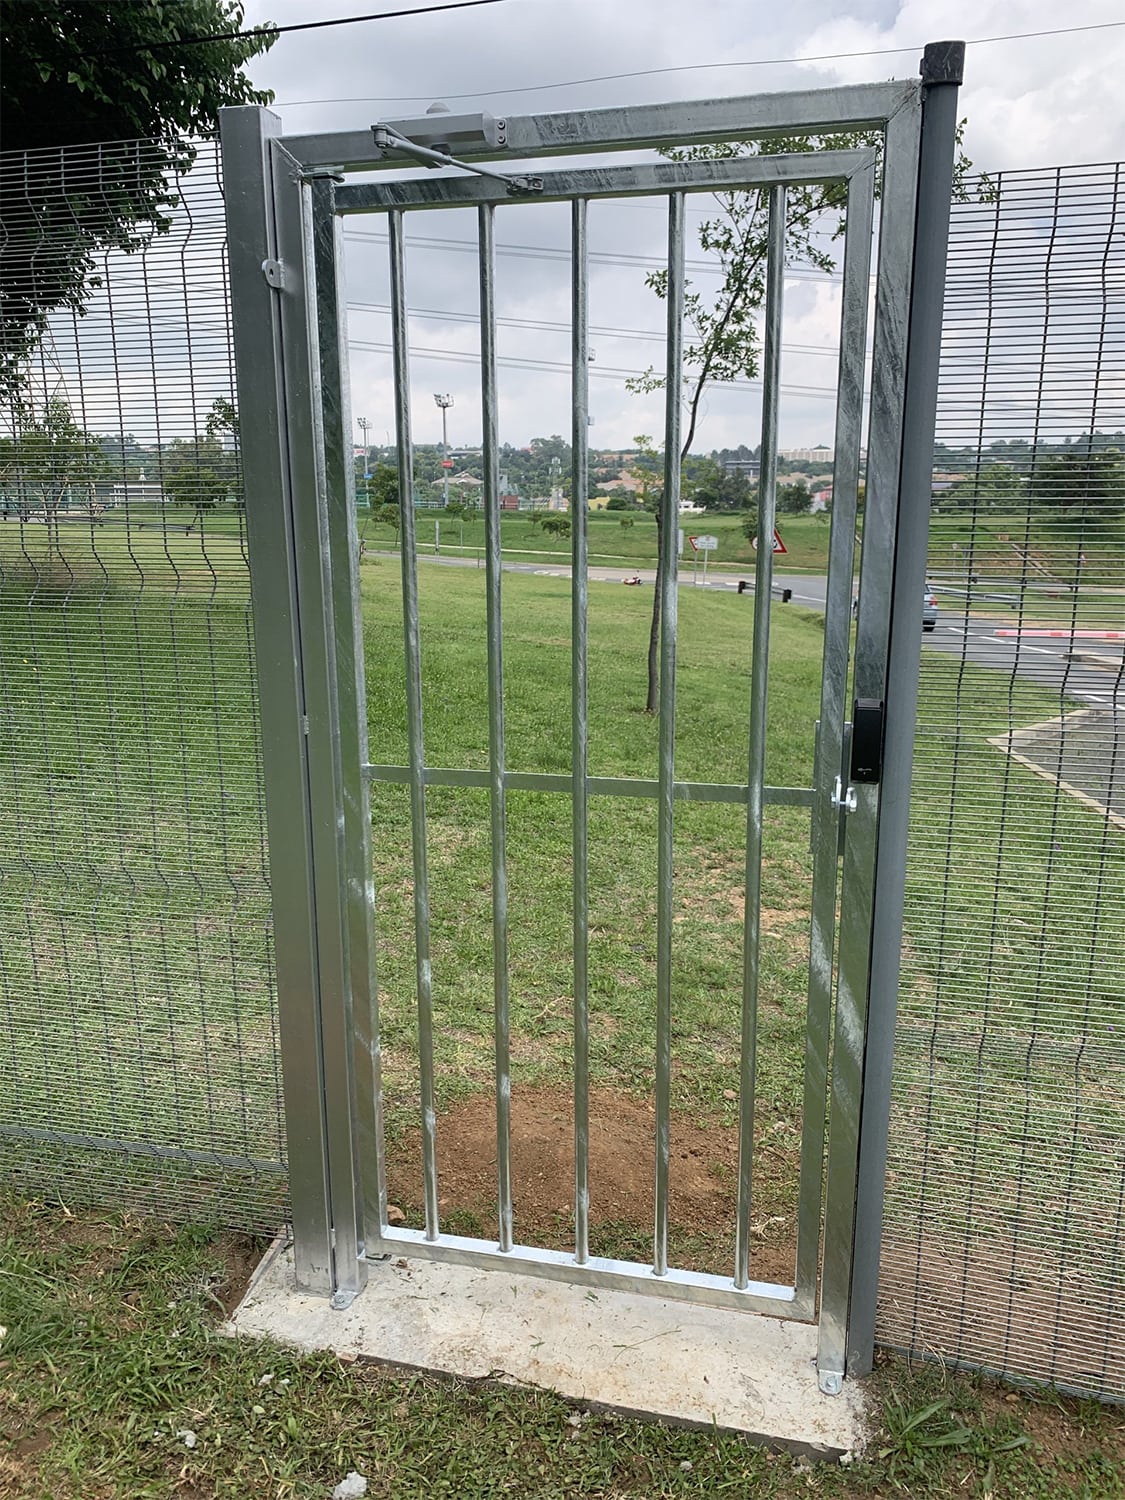 access control gate